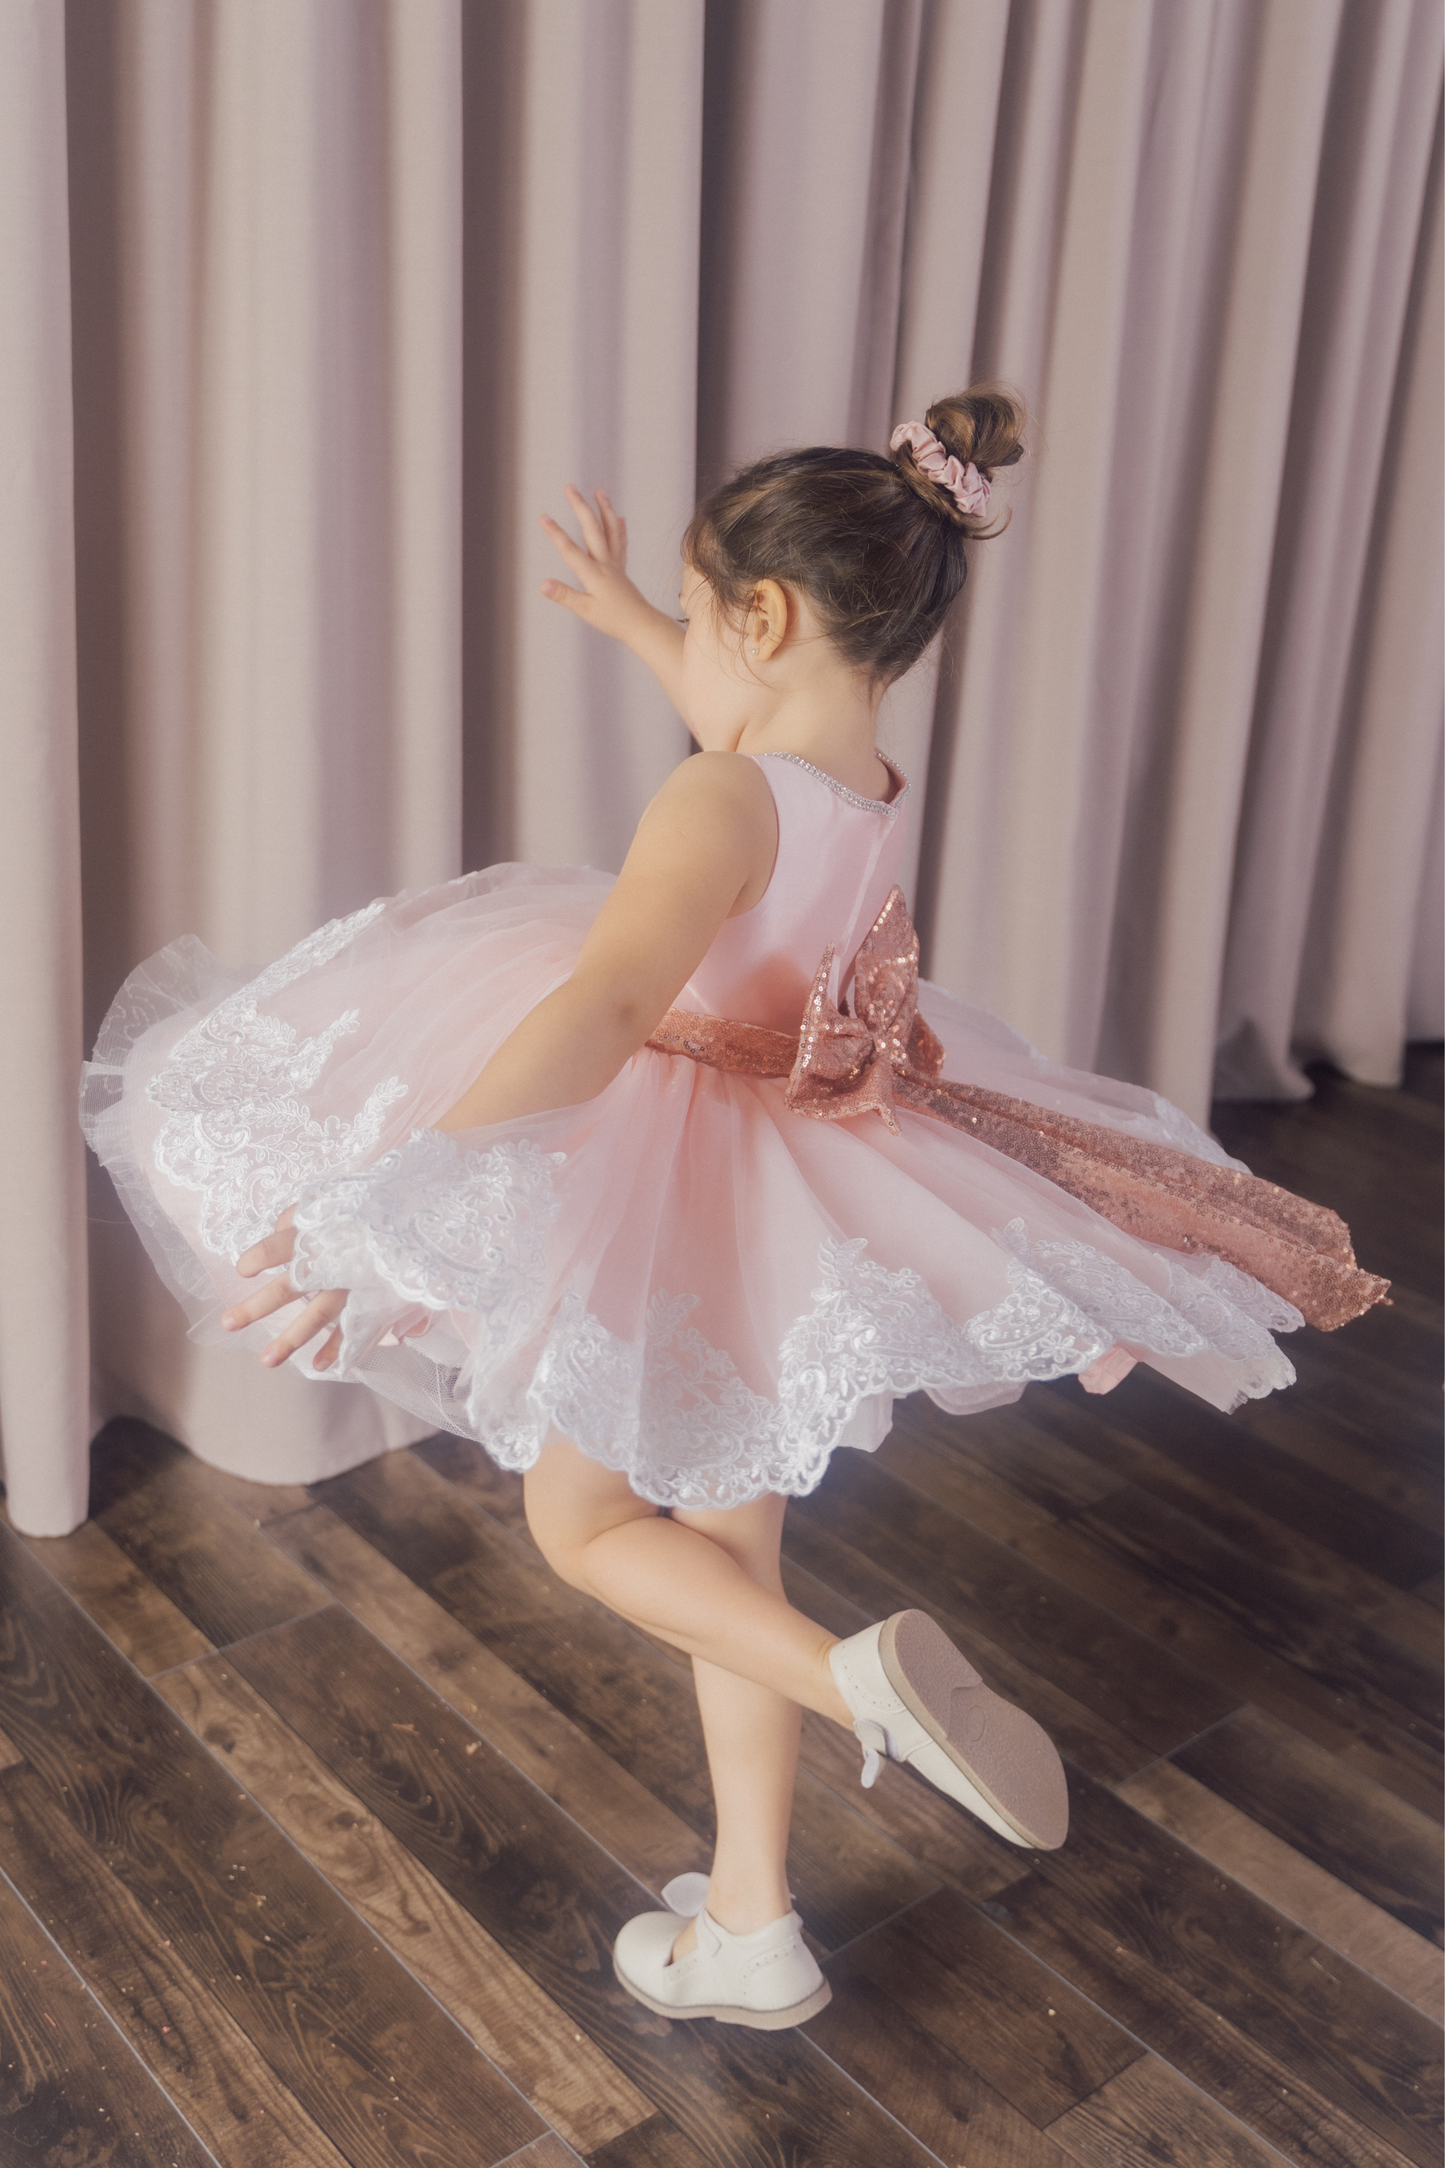 Pink Ballerina Dress